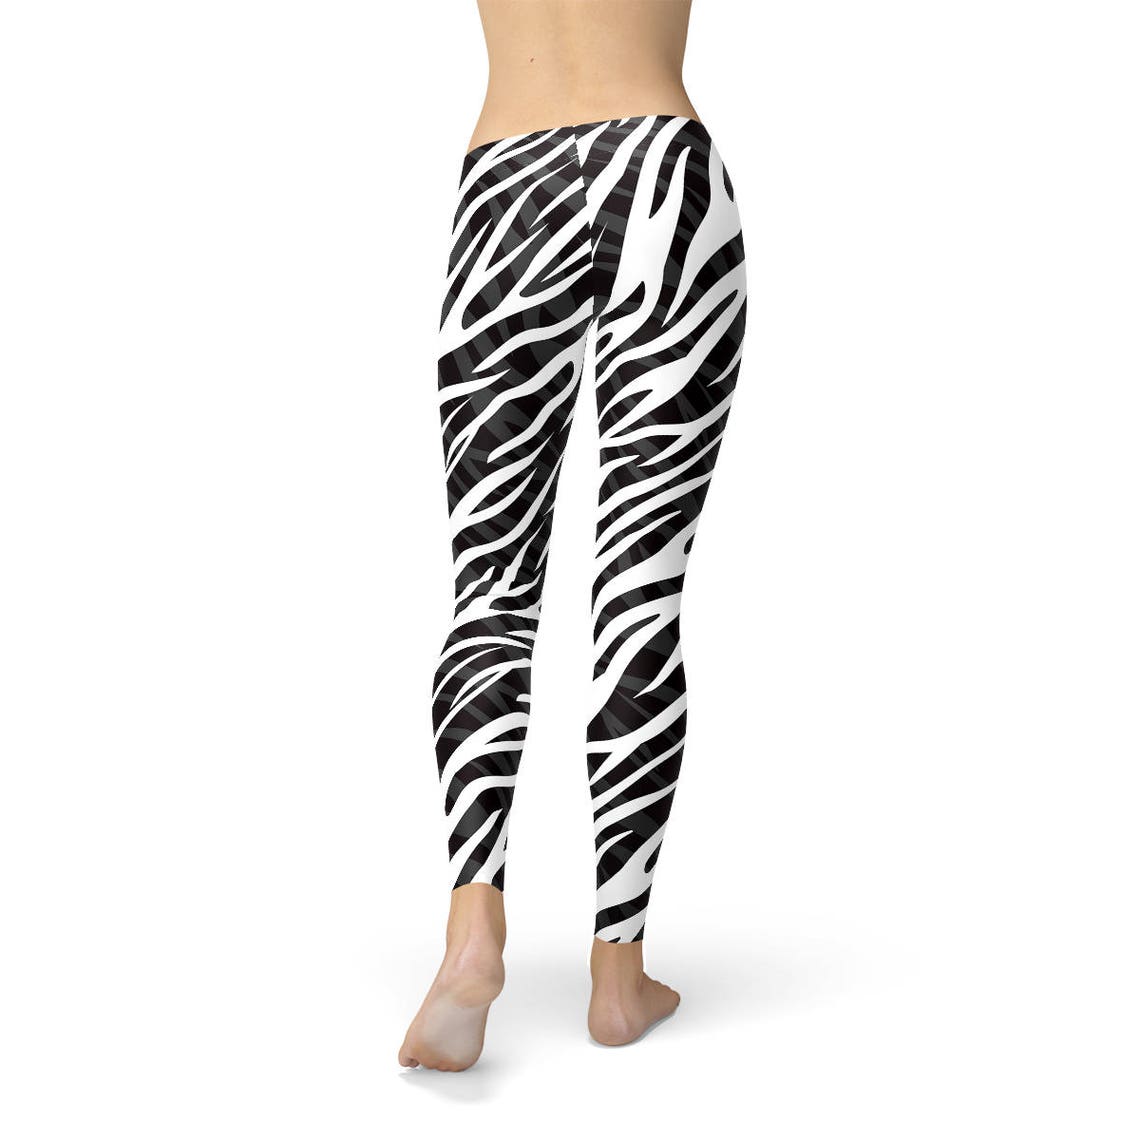 Womens Zebra Print Leggings Black and White Zebra Leggings | Etsy